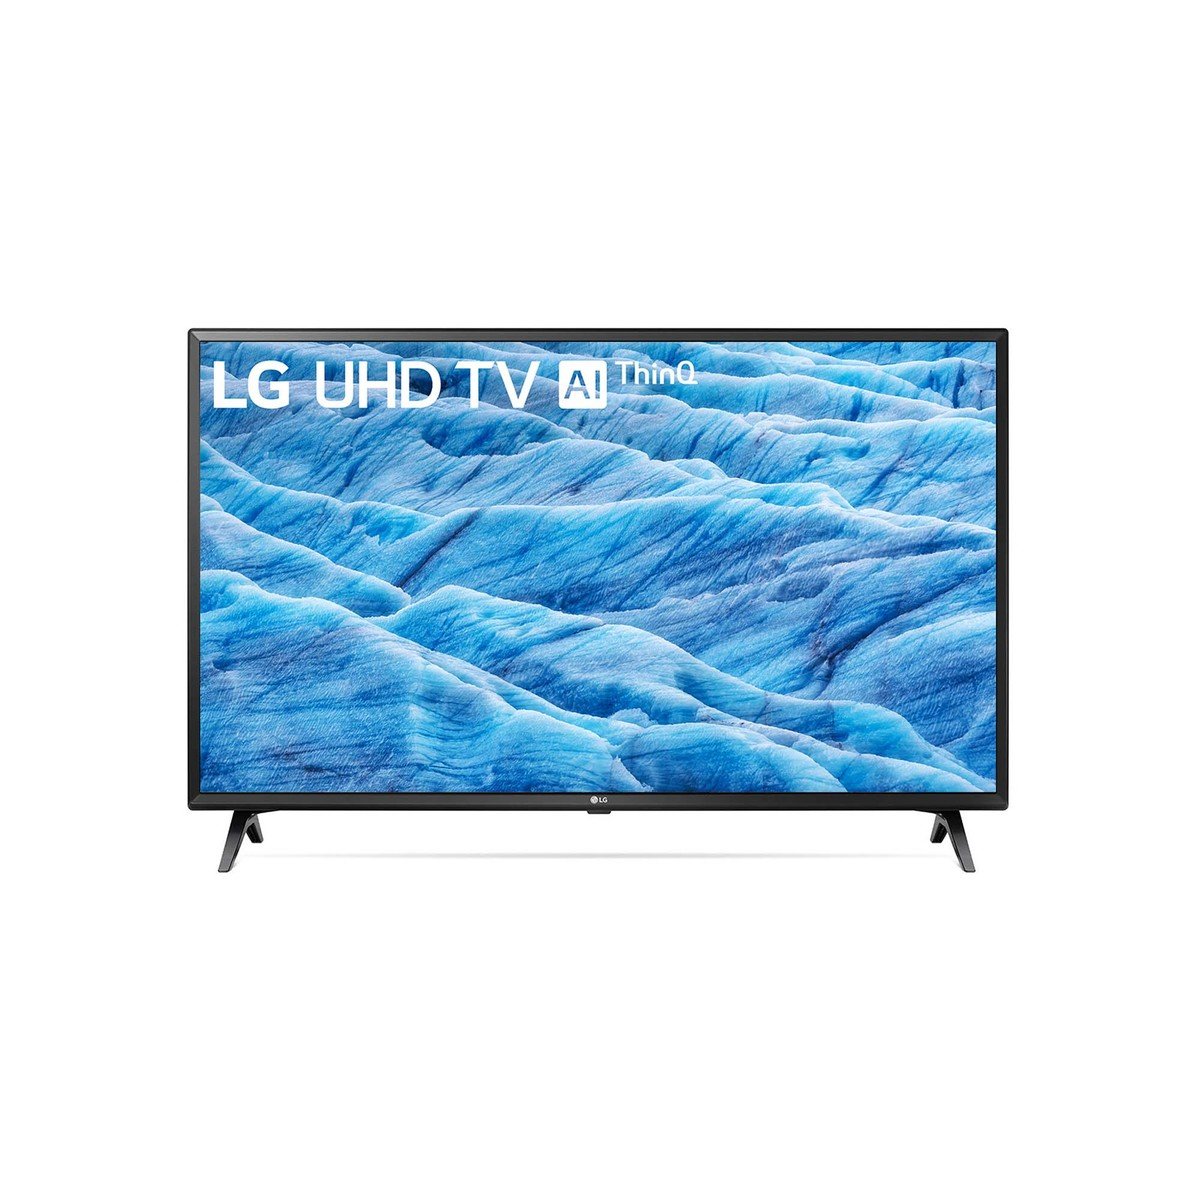 LG 4K Ultra HD Smart LED TV 49UM7340PVA 49"